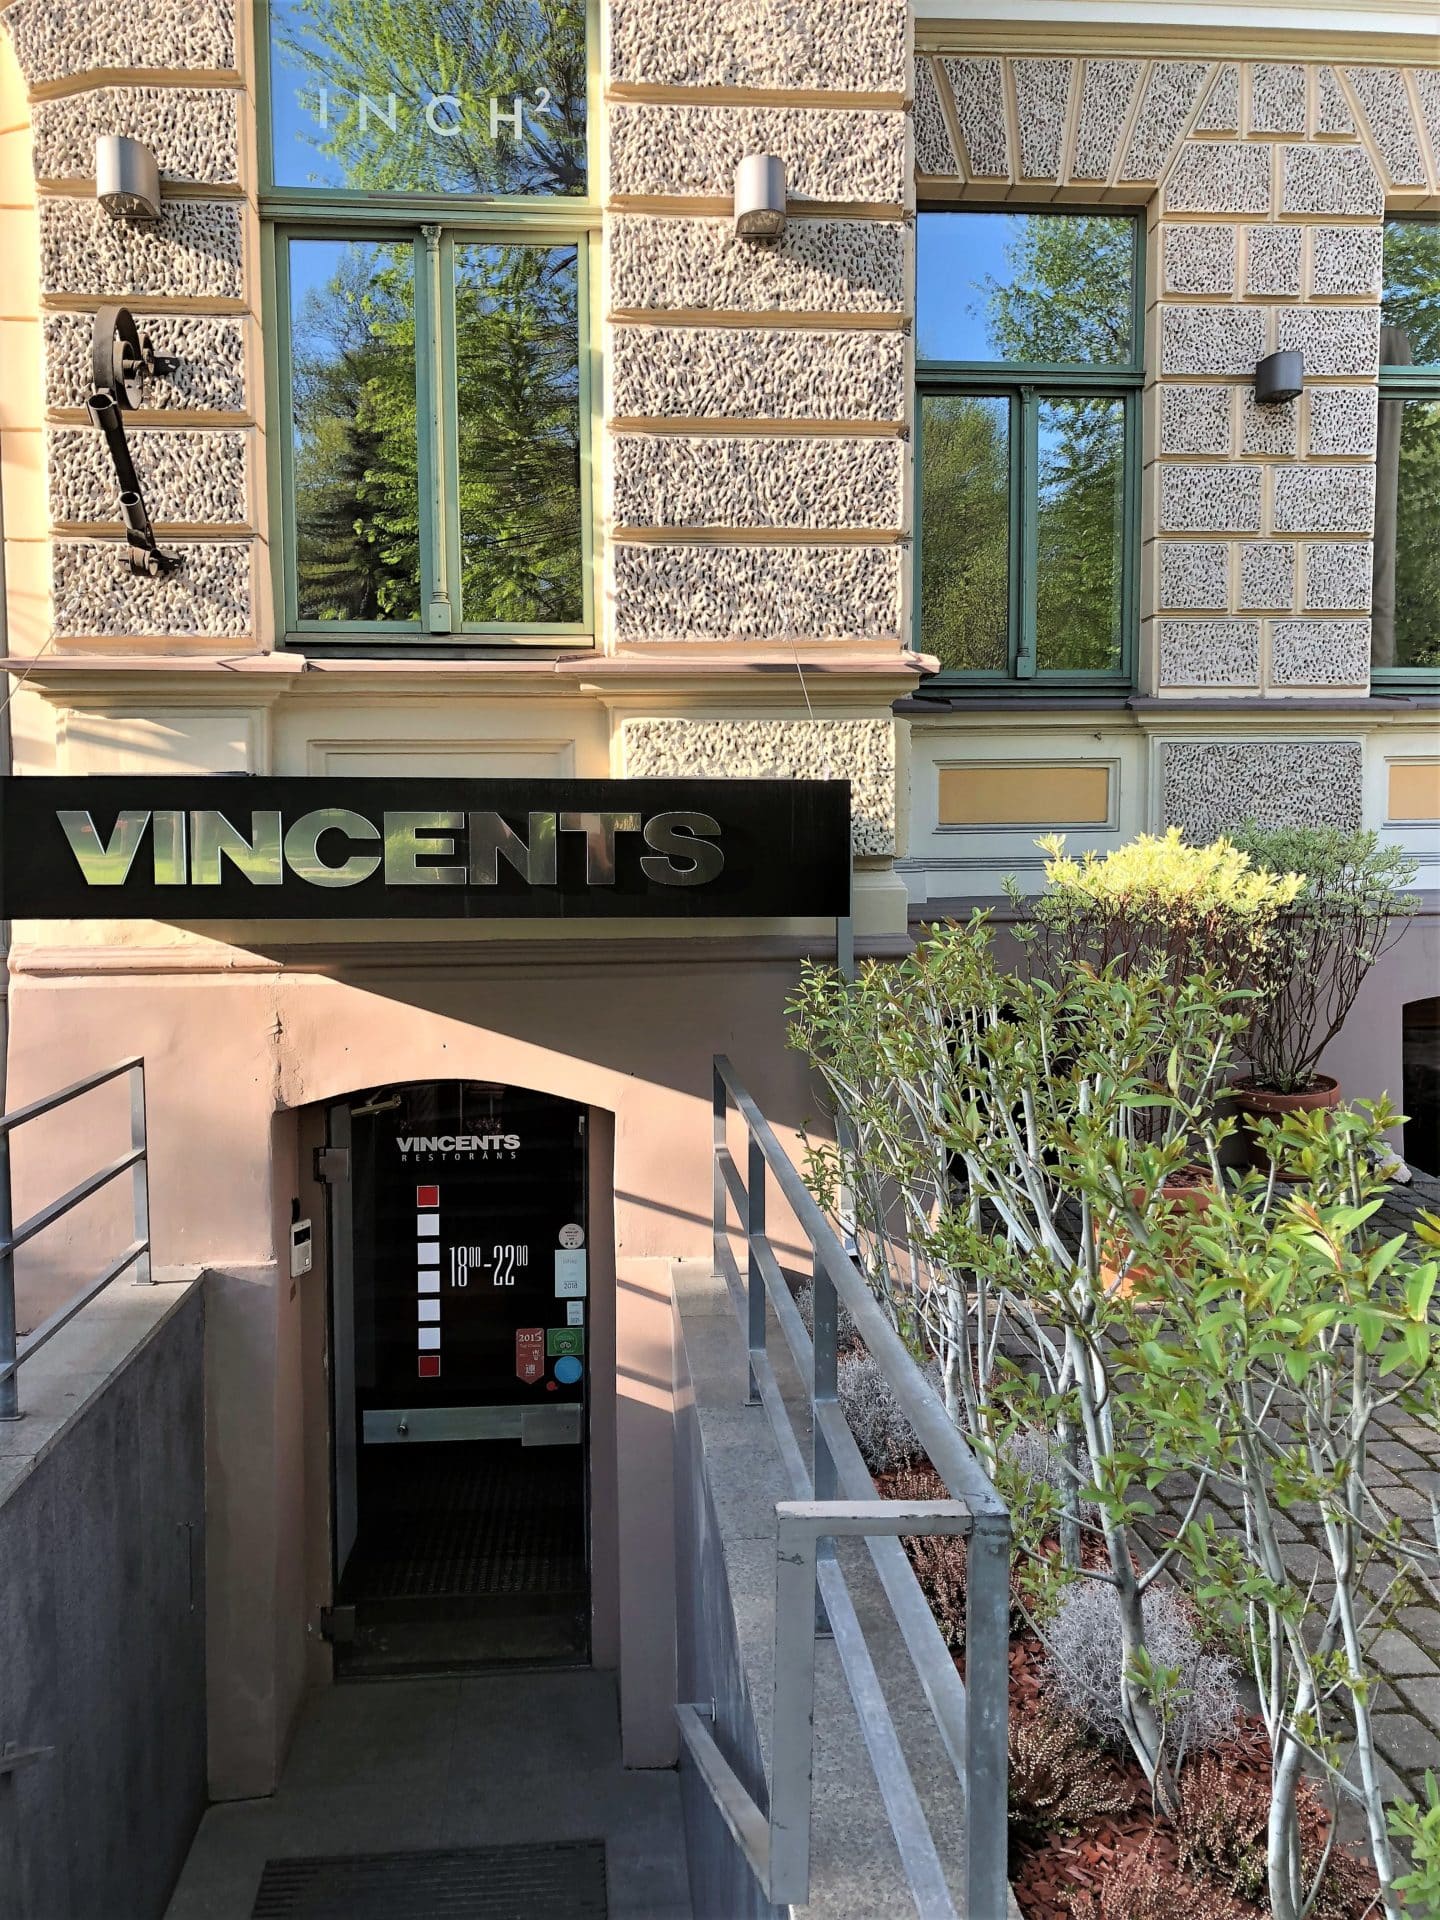 Vincents Resturant, Riga